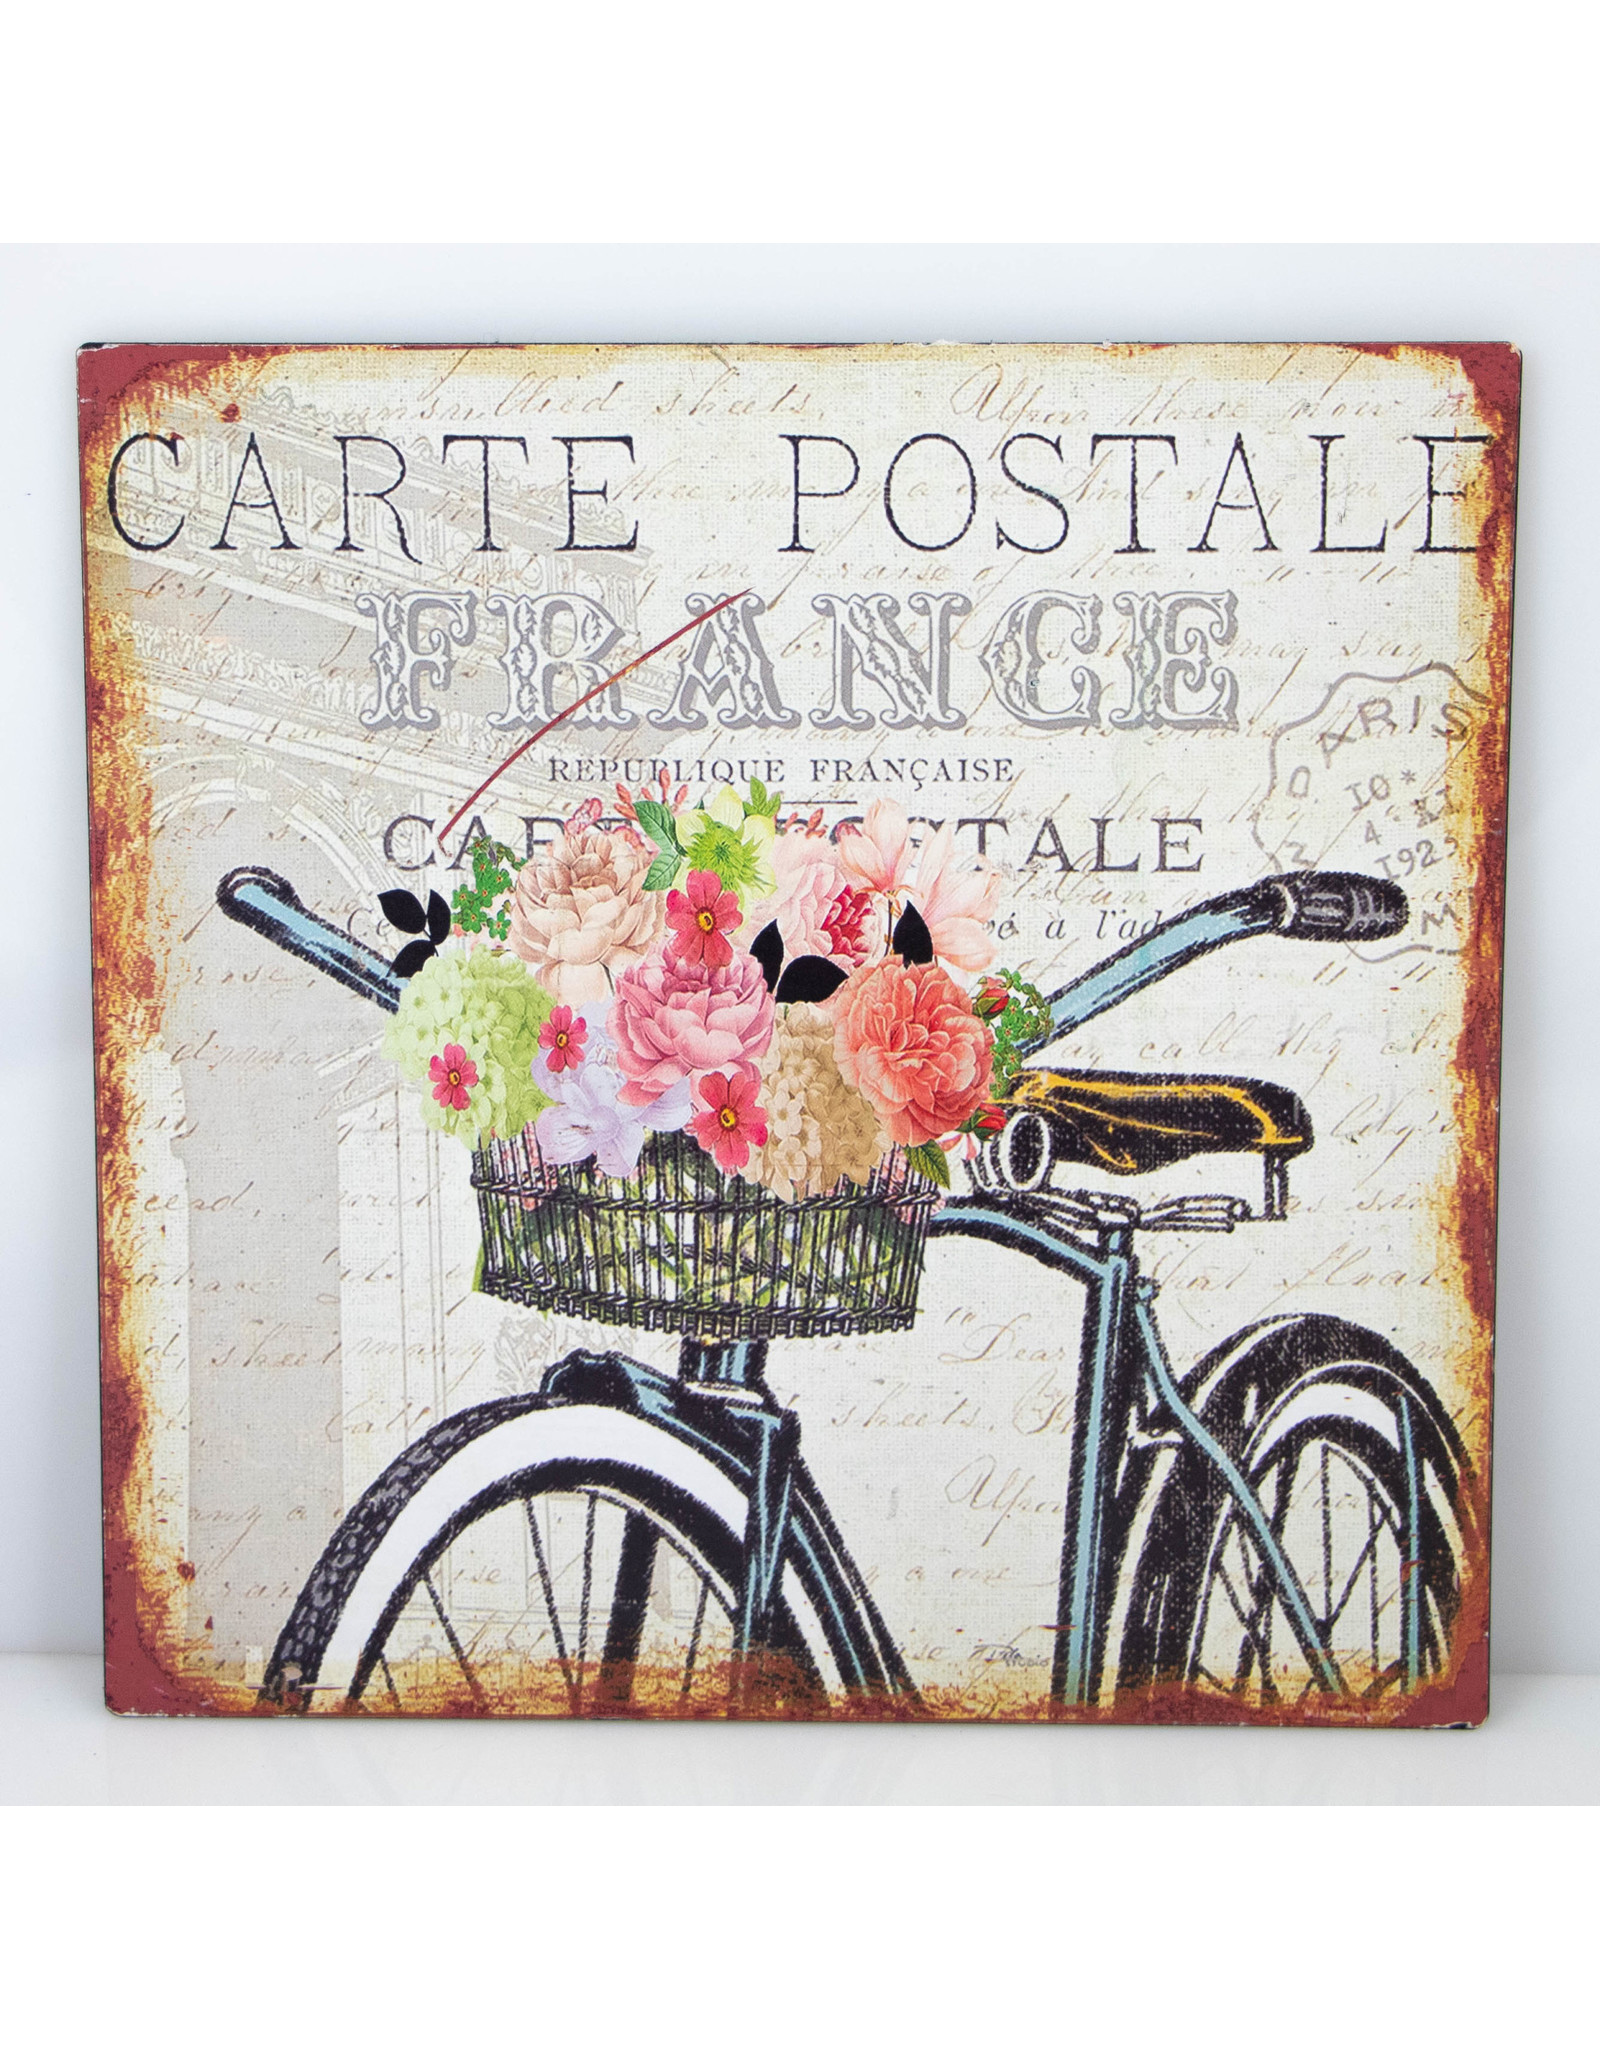 Carte postal